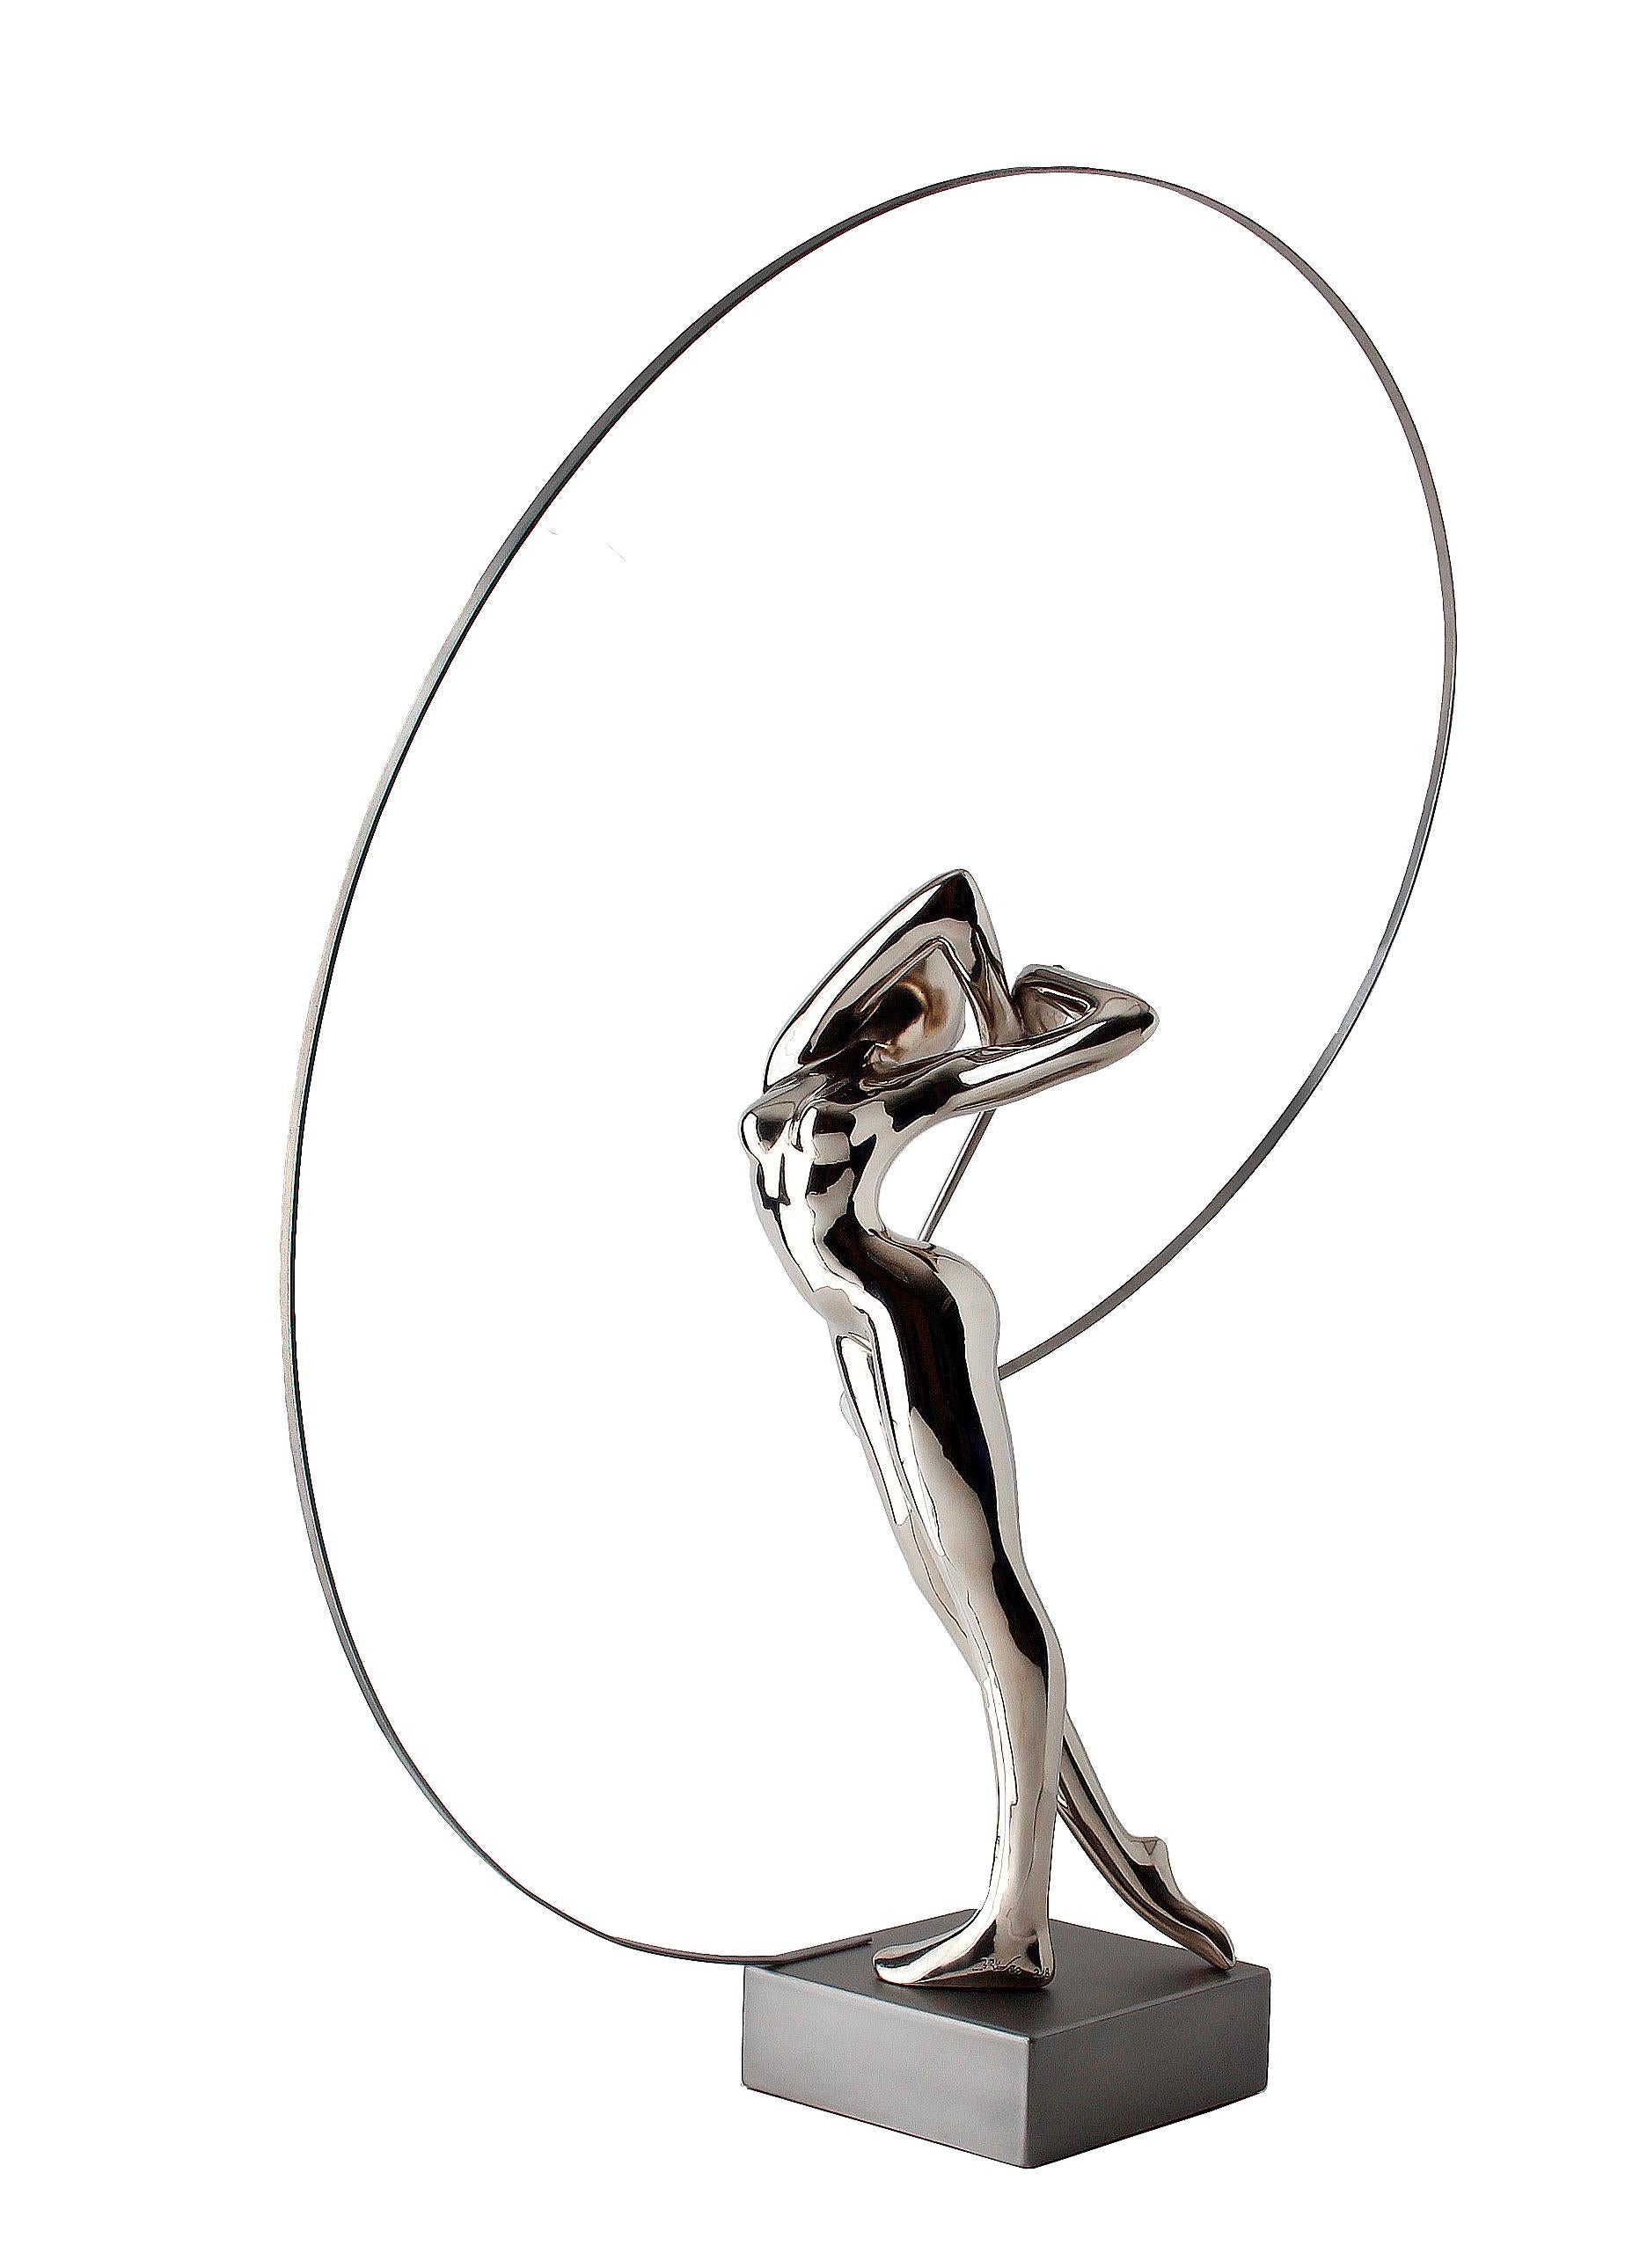  Bernard Rives  Golf  Silver  Swing original resin sculpture For Sale 4